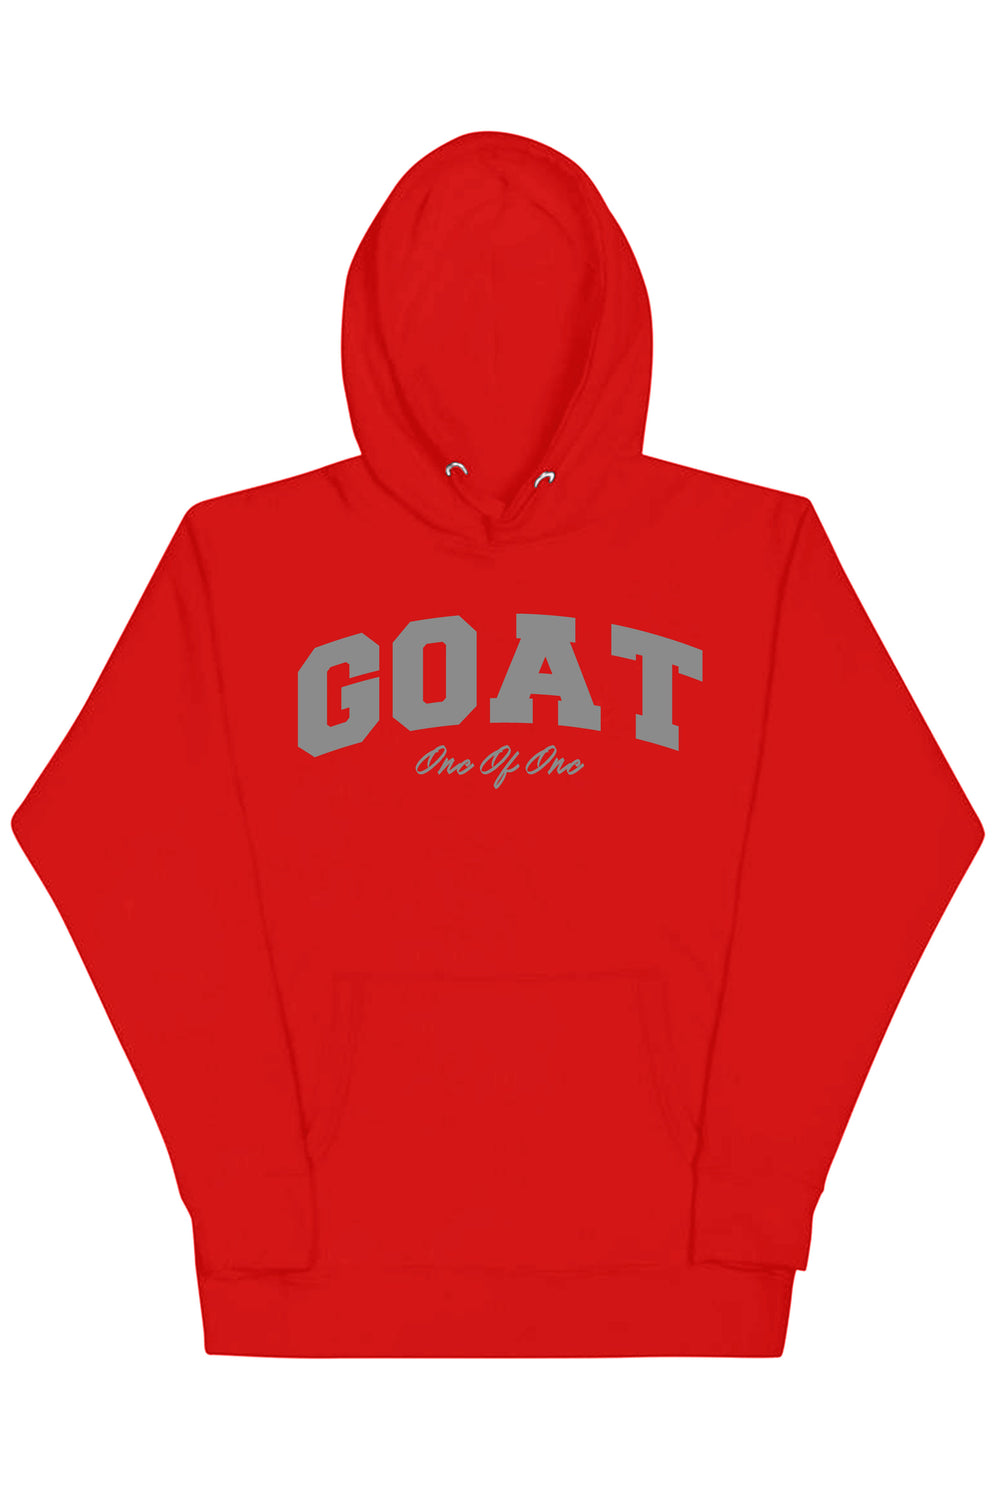 Goat Hoodie (Grey Logo) - Zamage